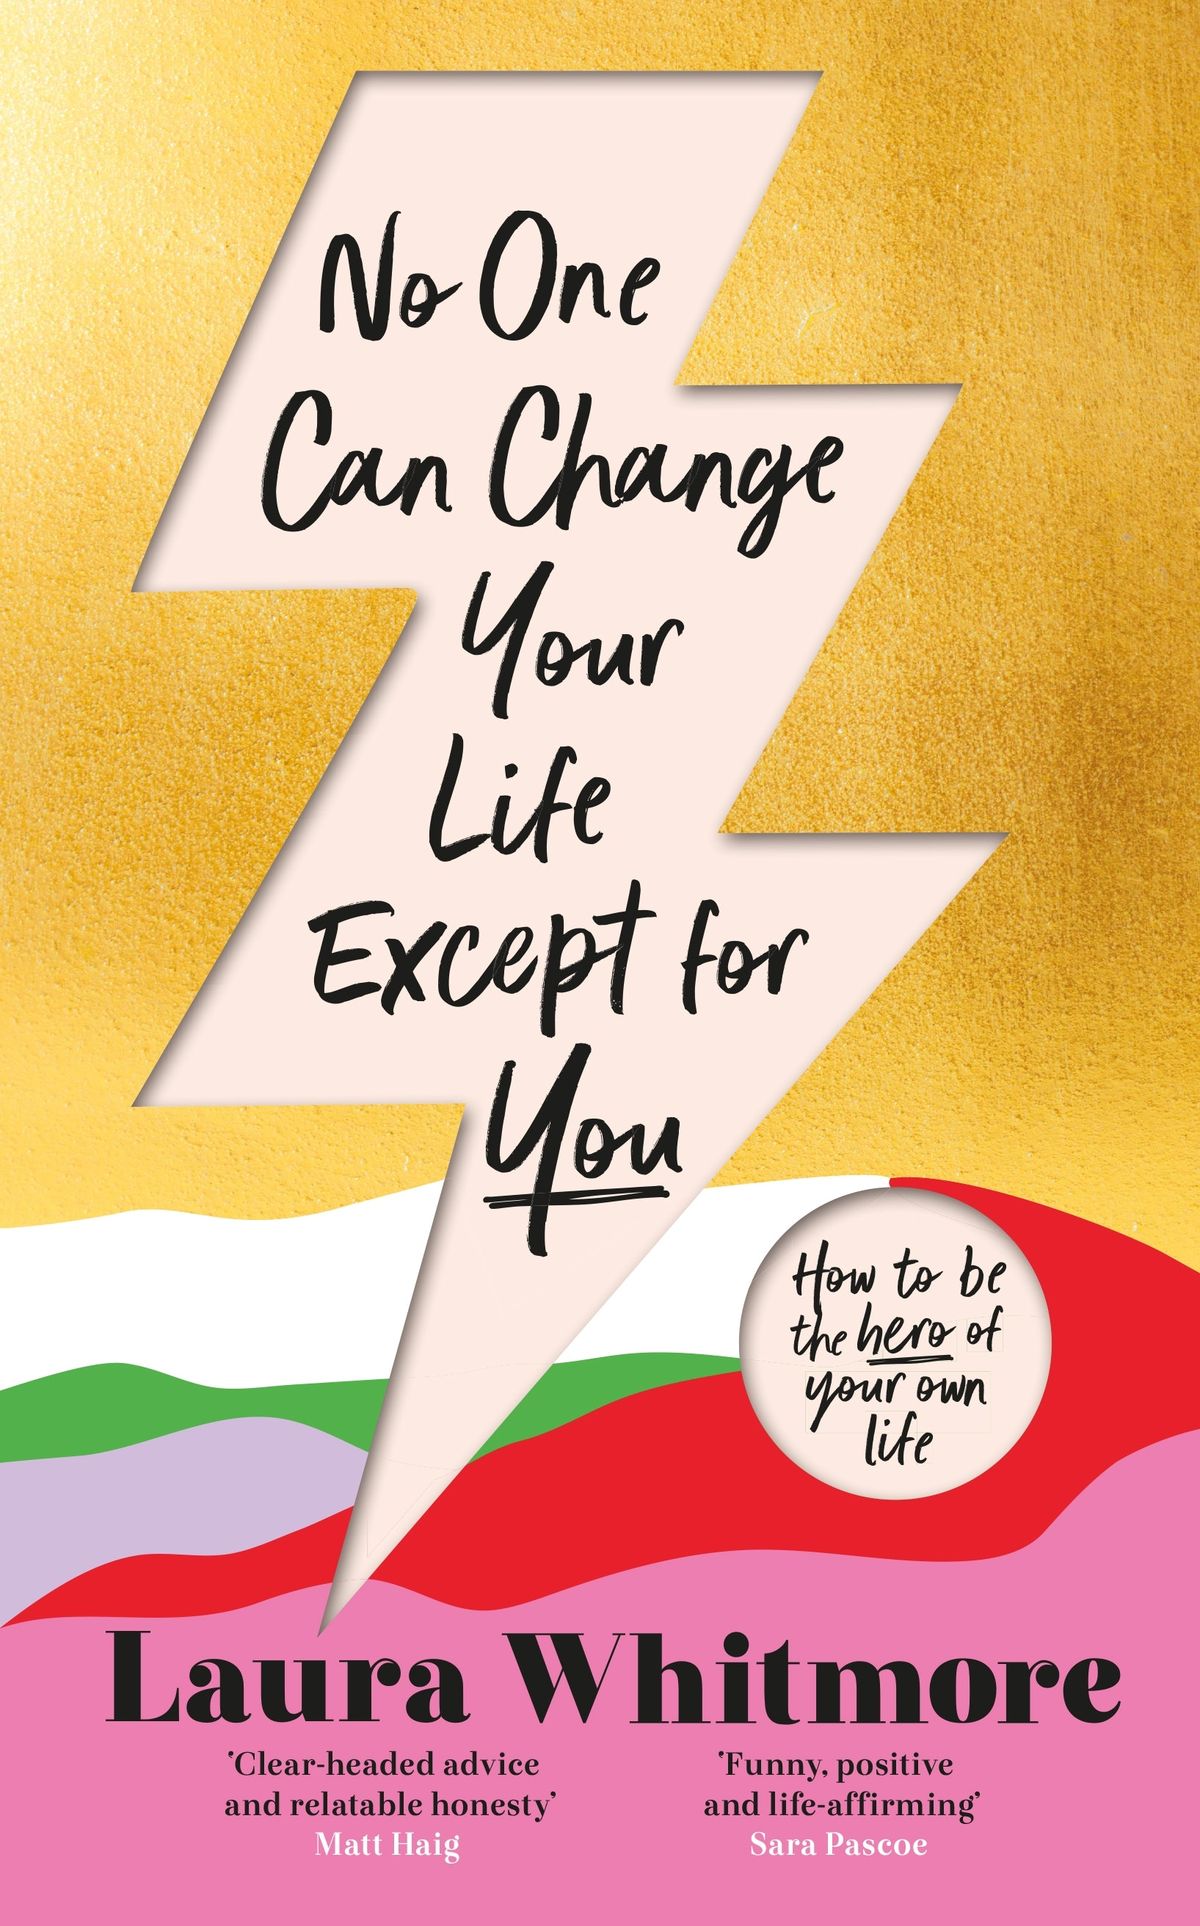 Το νέο βιβλίο της Laura Whitmore Is All About Finding Your Purpose – ΑΠΟΣΠΑΣΜΑ